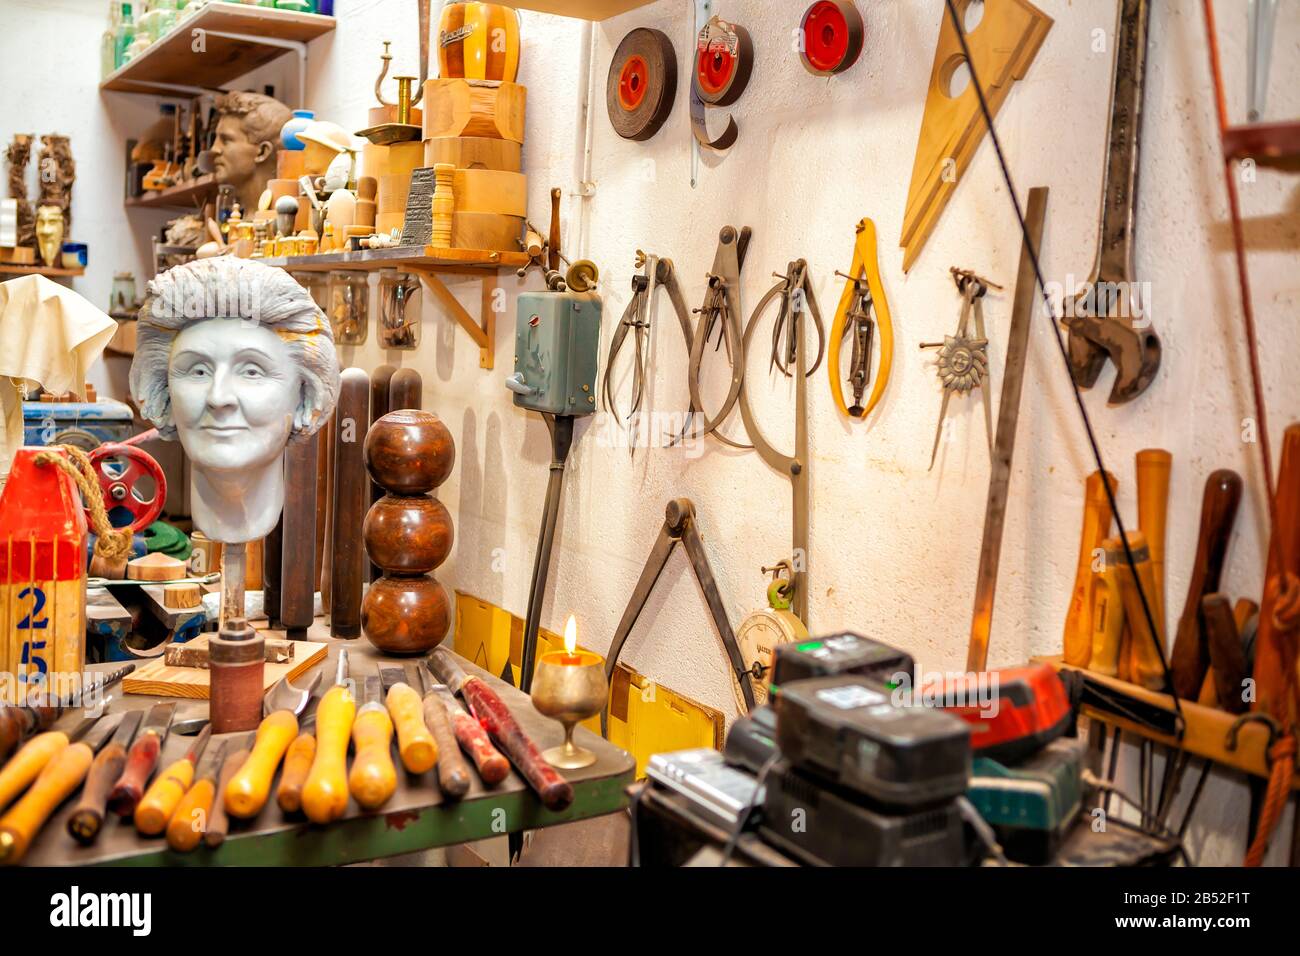 buste en plâtre dans l'atelier d'artiste avec une variété d'outils et de burins accrochés au mur Banque D'Images